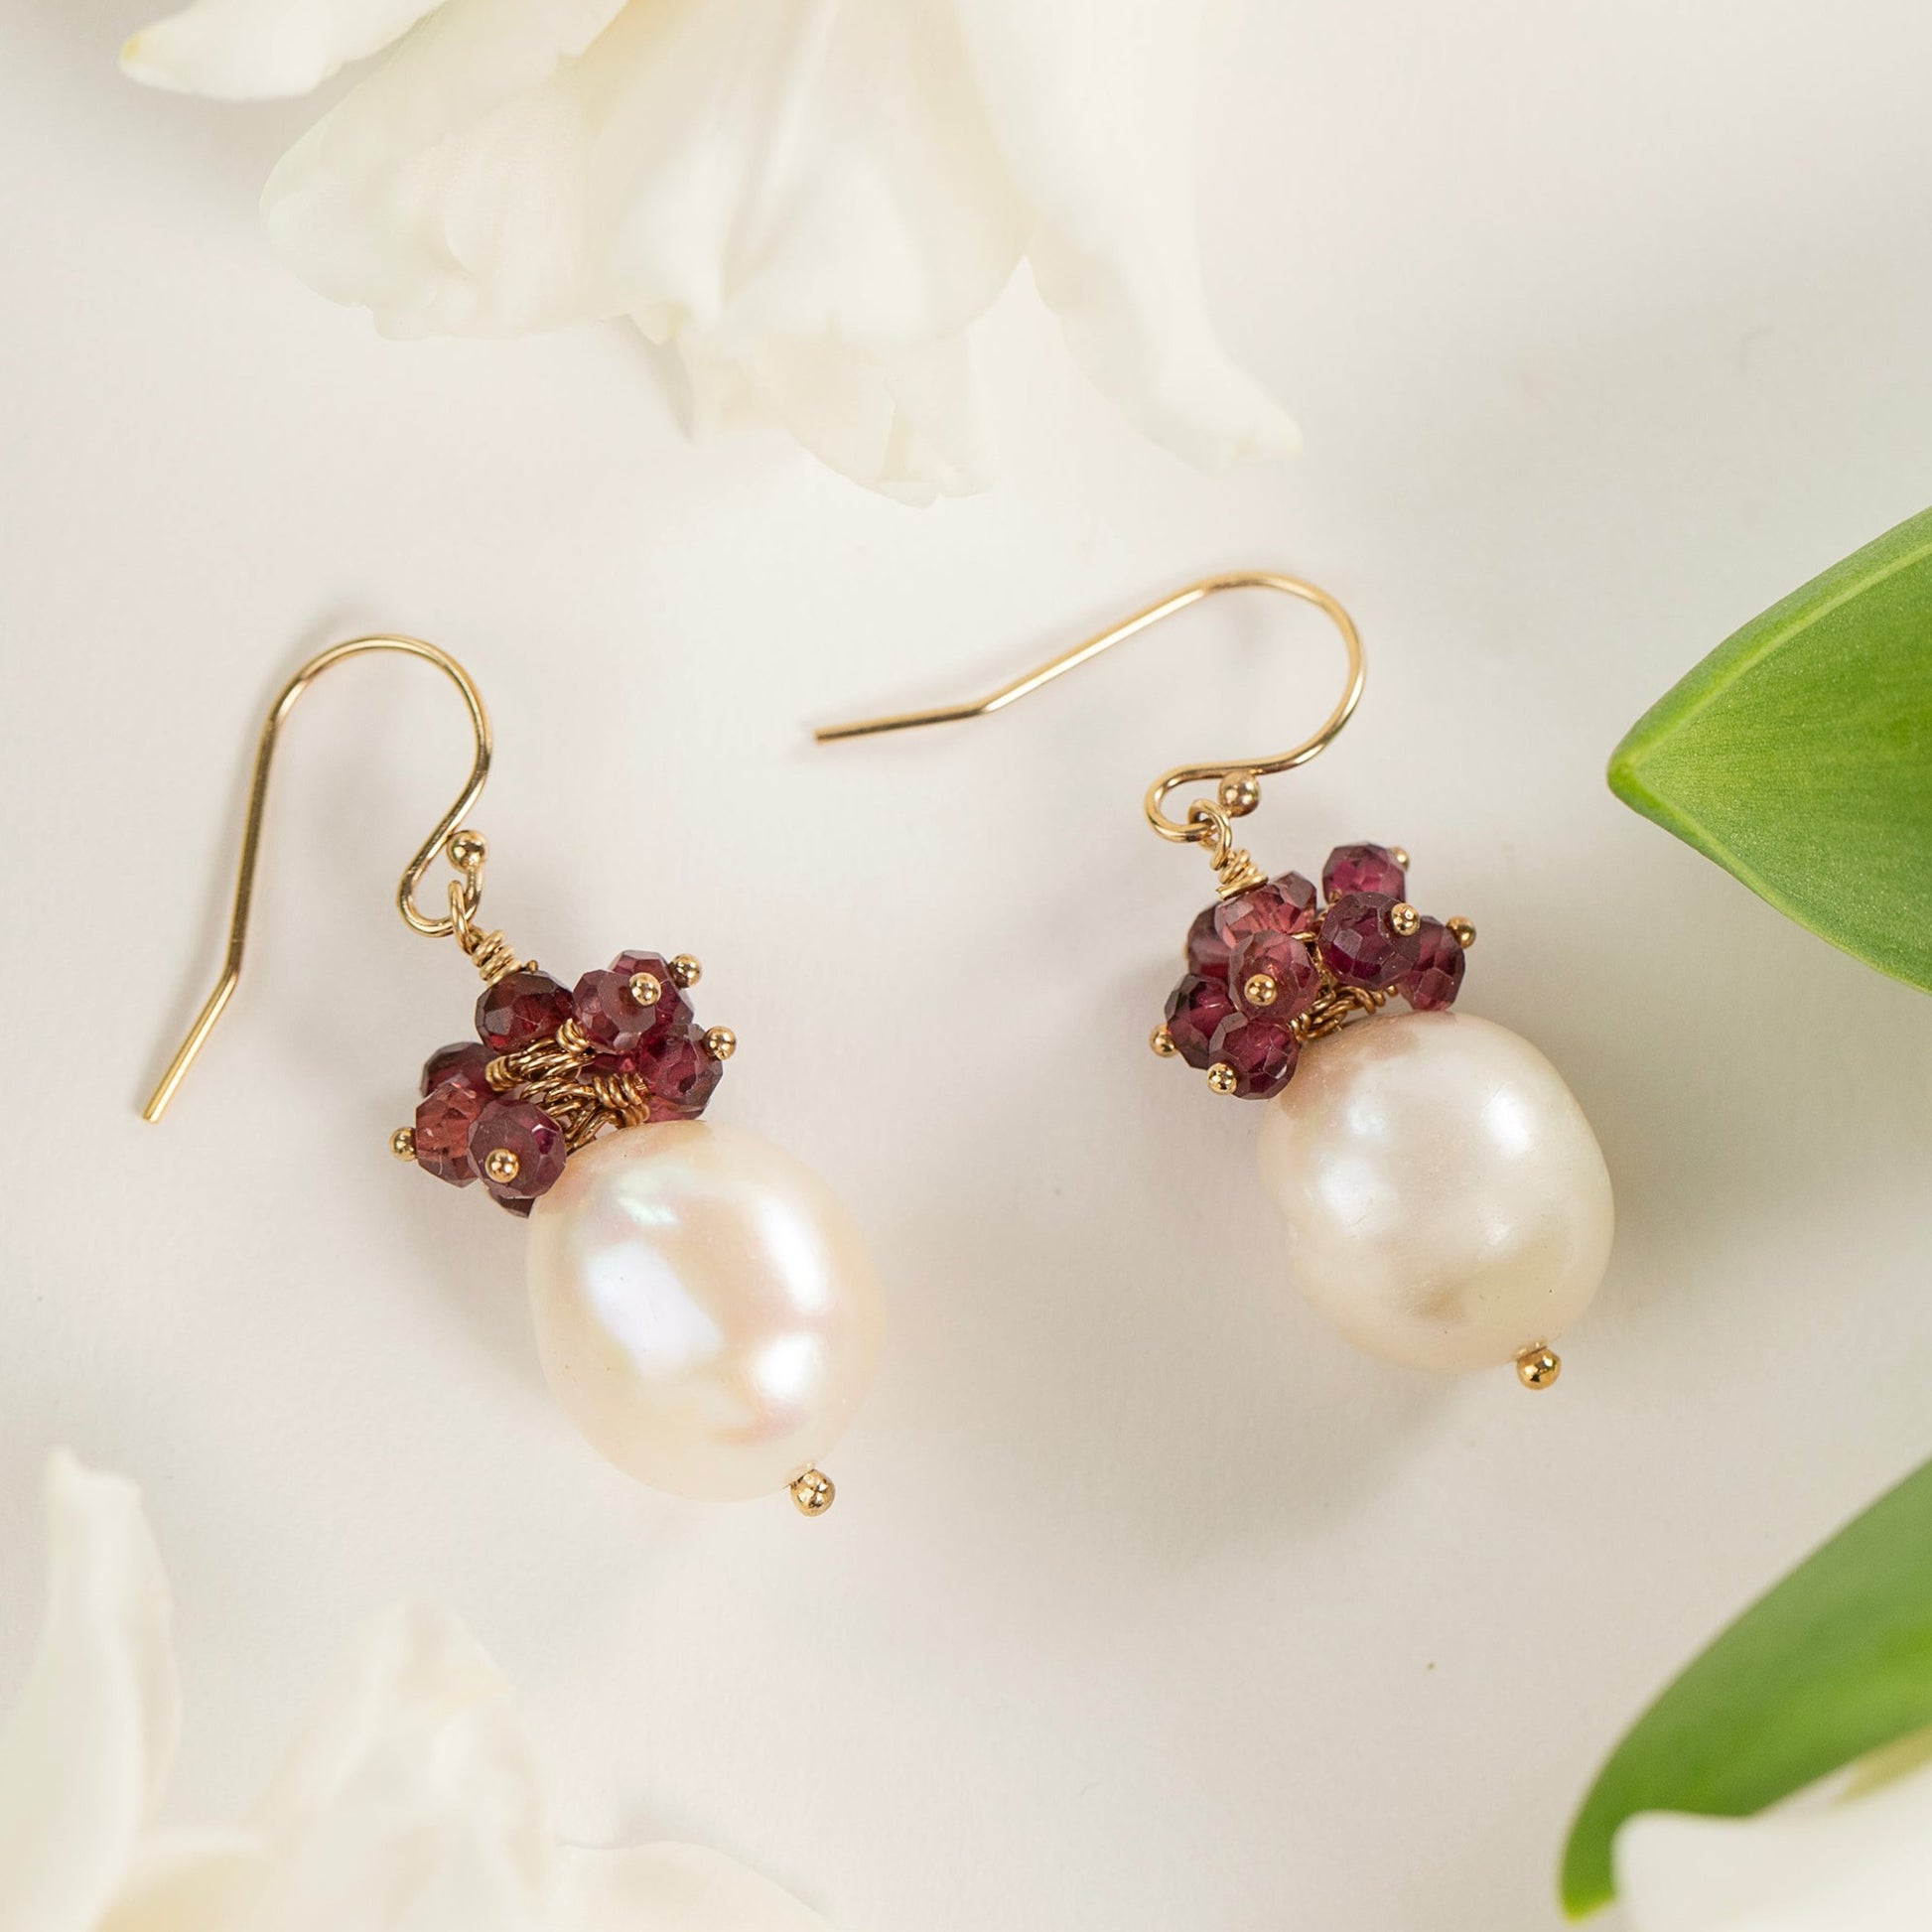 January Birthstone Earrings - Garnet & Baroque Pearl Earrings - Silver & Gold